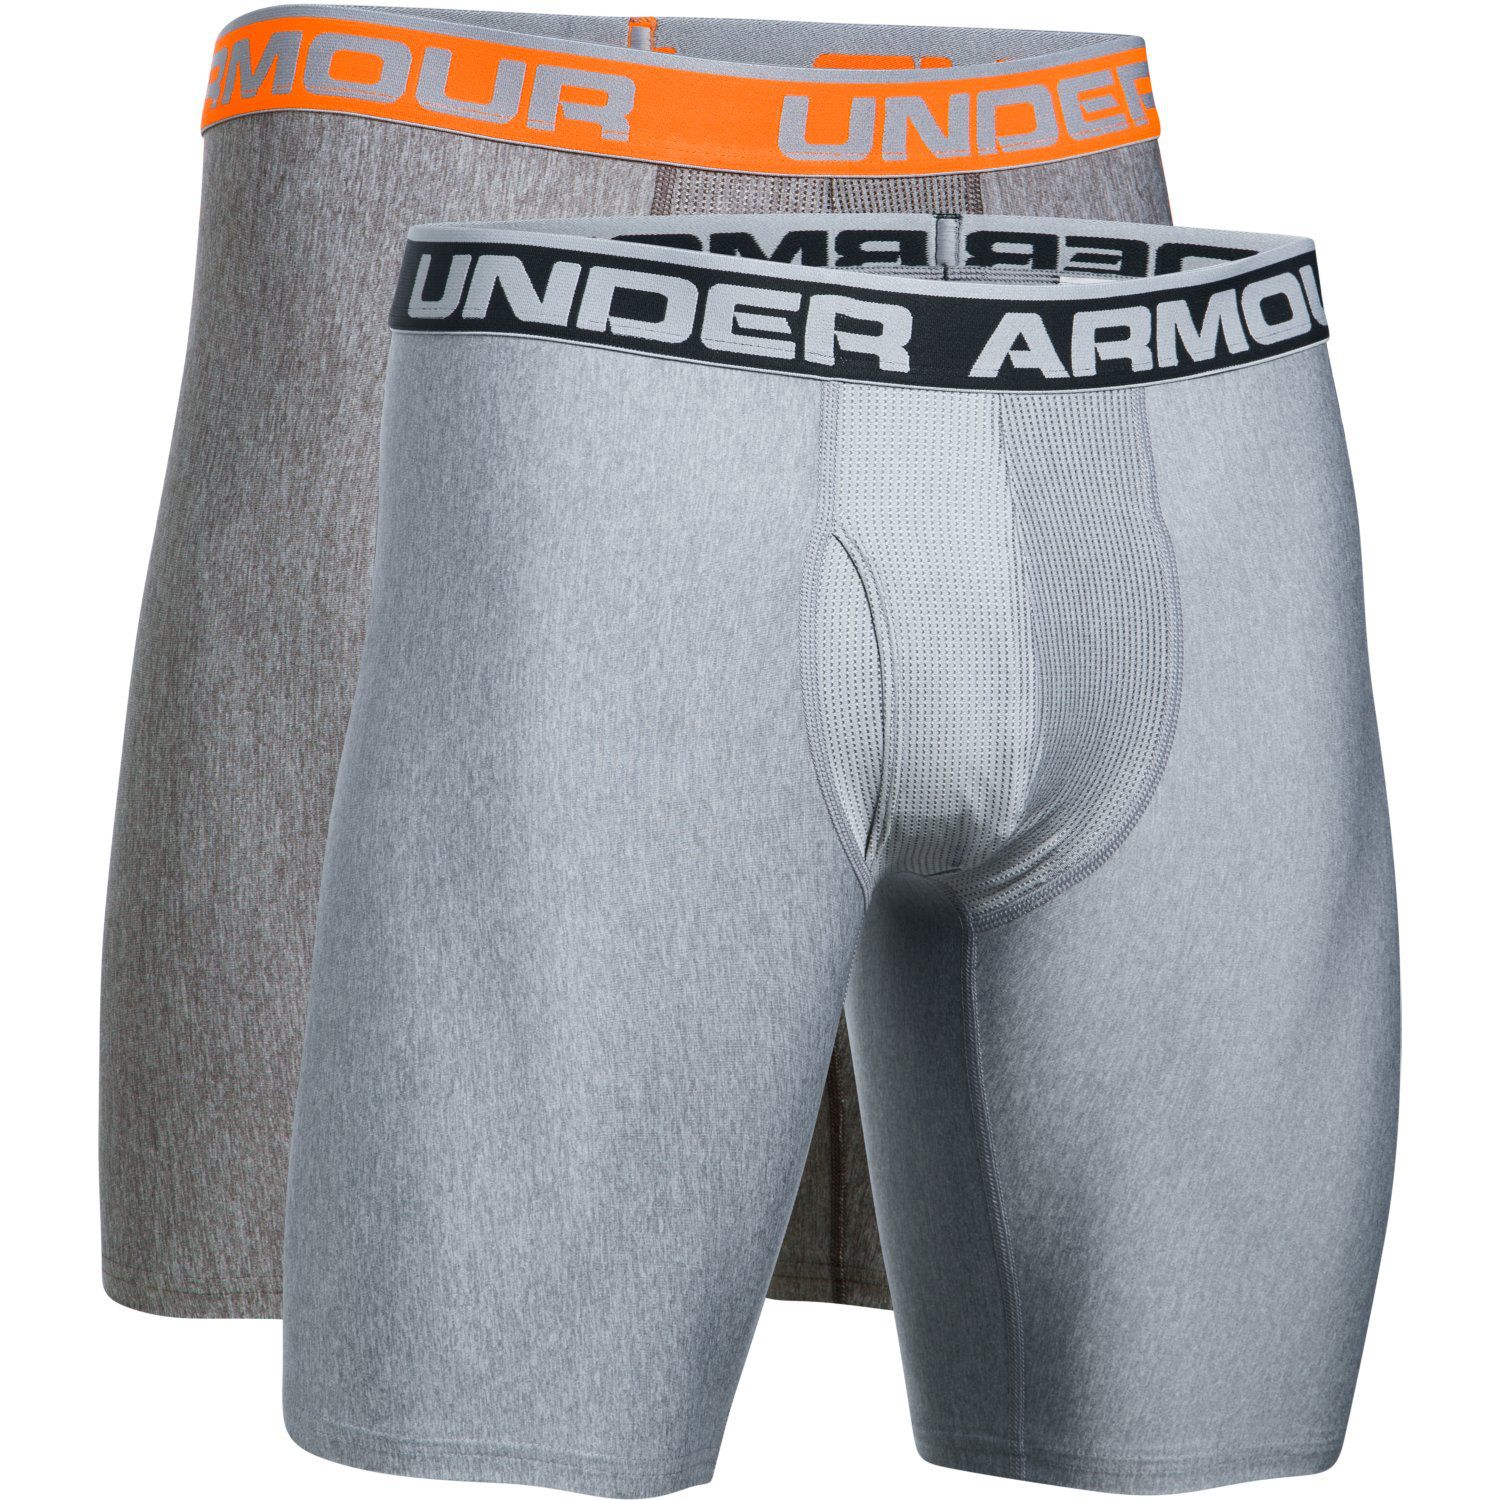 under armour men's underwear 9 inch